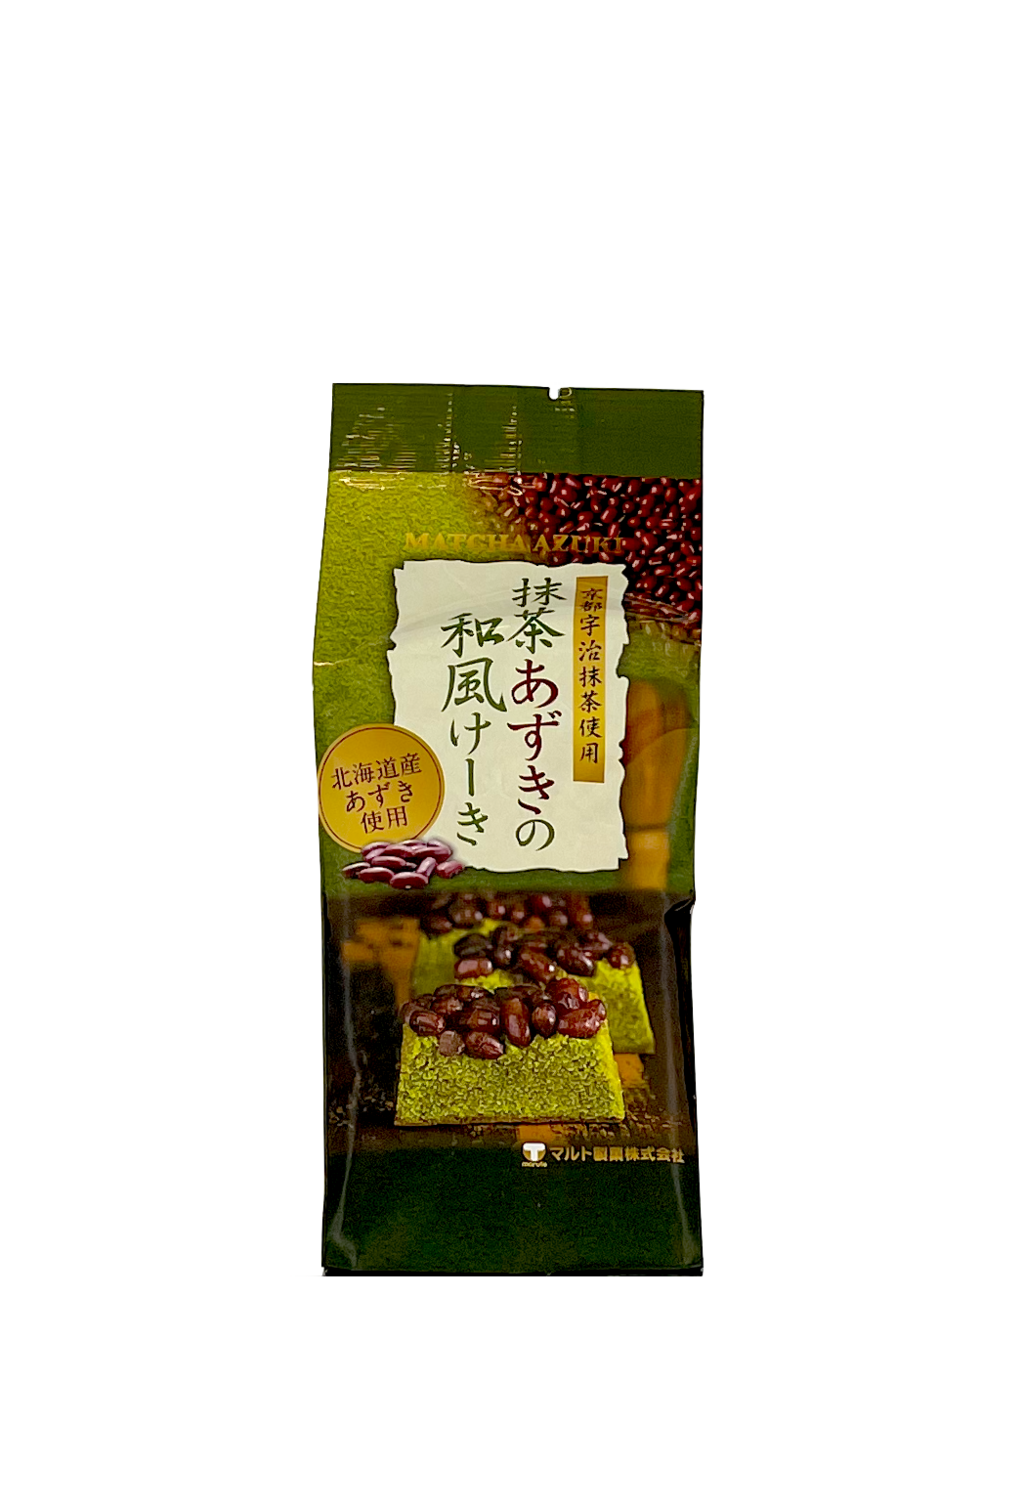 保质期: 2023.04.14 紅豆抹茶蛋糕 120g Maruto 日本